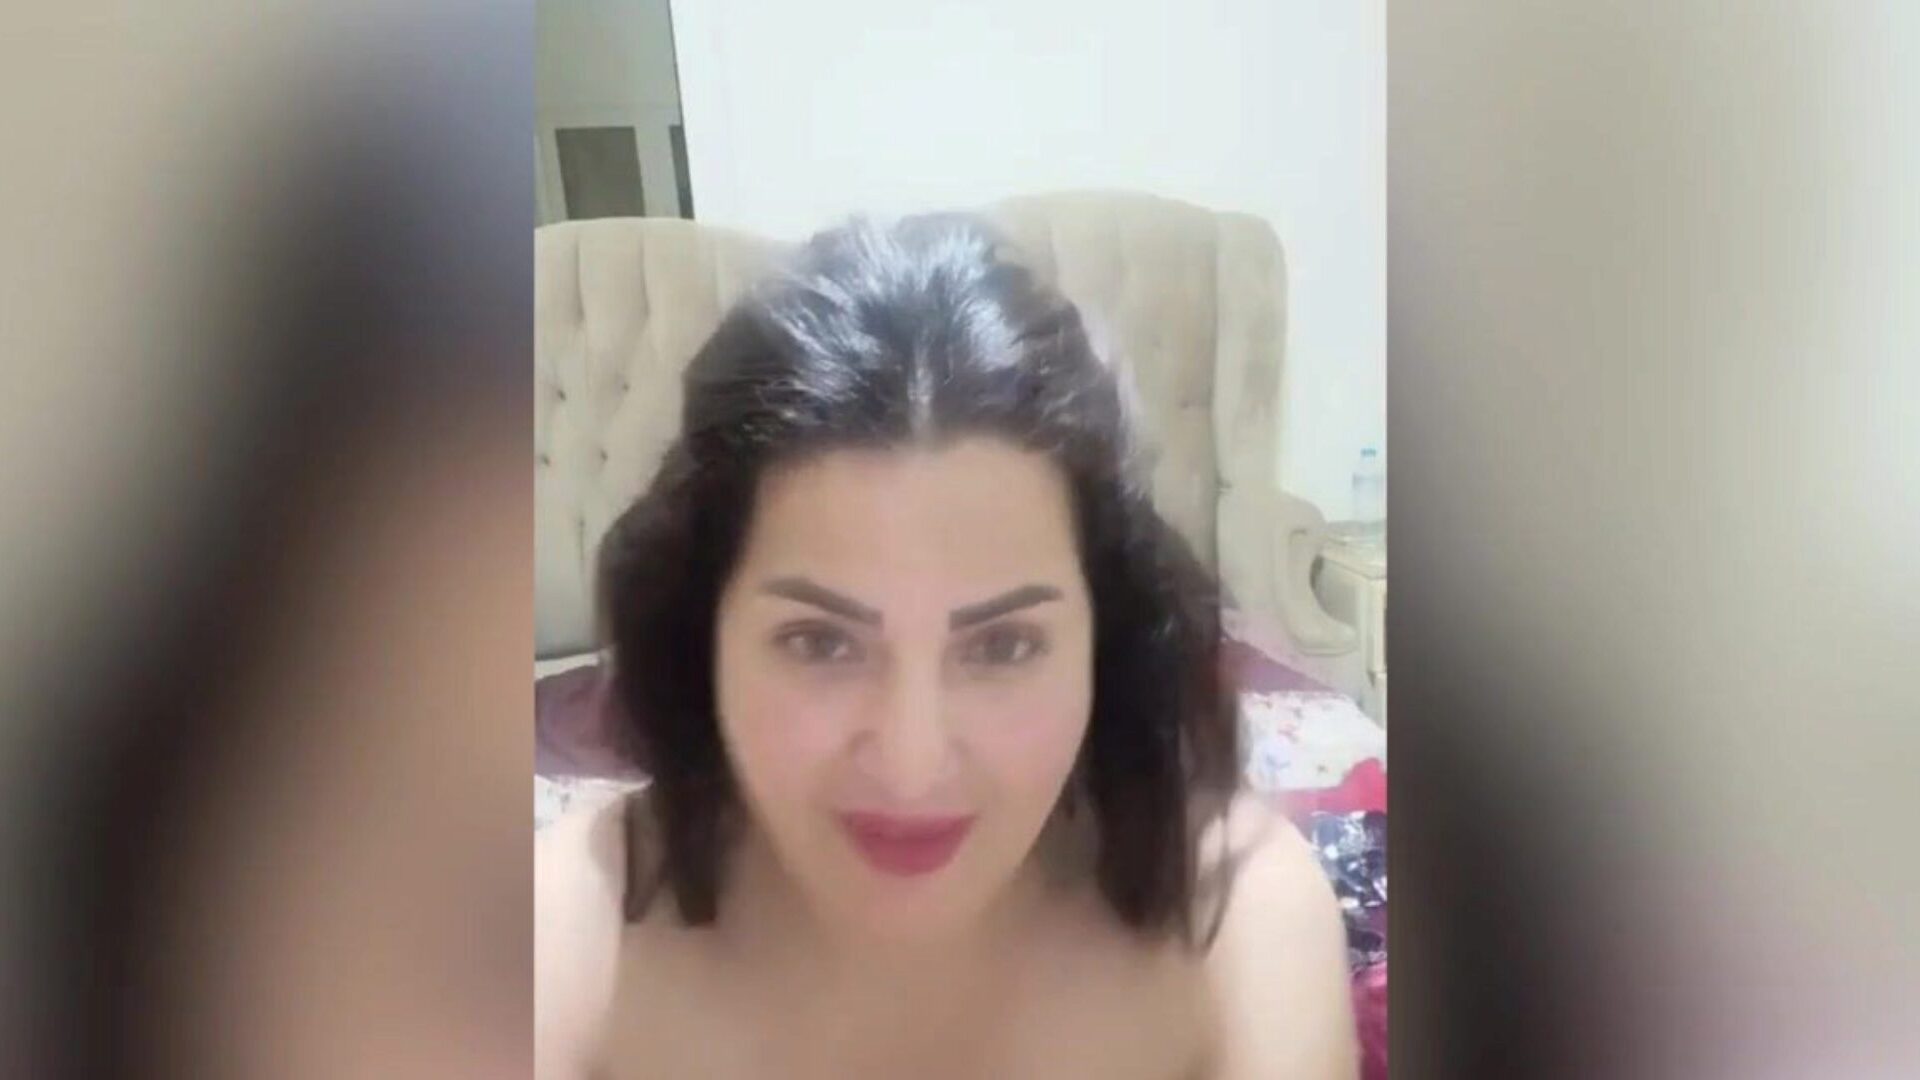 arabska egipska aktorka fuck-a-thon sama el masry gorąca masrya naar egipska arabska orgia sama al-masry, która jest hawt asaaa, pokazując swoje wielkie bazooki i hawt wielkie gazoo masrya naar